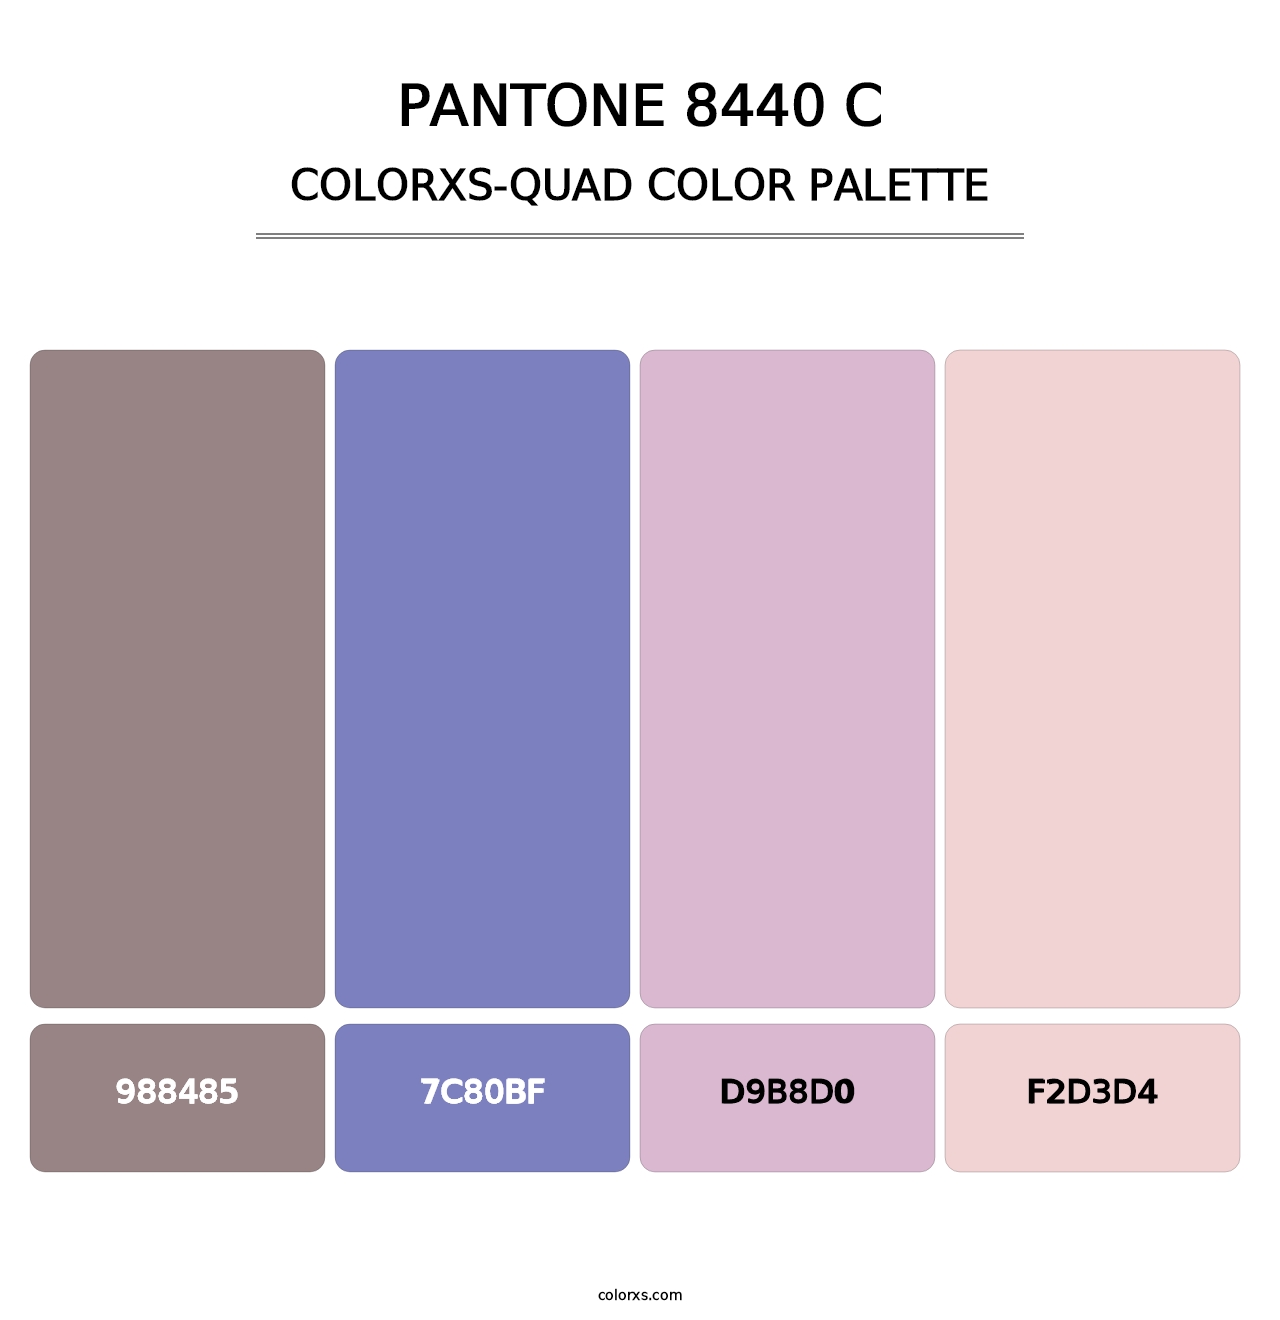 PANTONE 8440 C - Colorxs Quad Palette